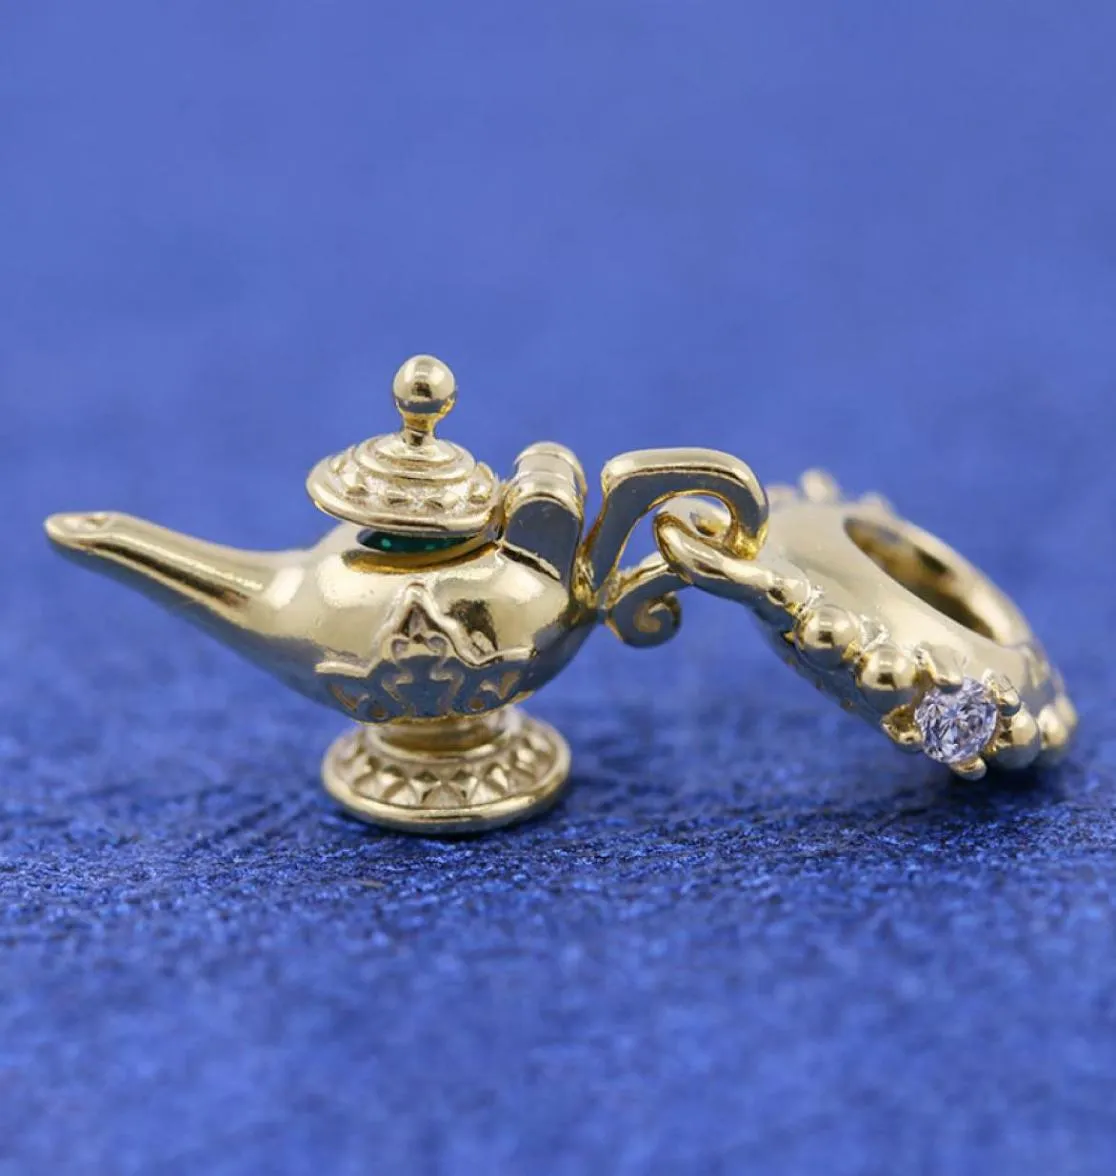 Bine Gold Metal plaqué lampe magique Perle de pelle entente des bijoux européens Berons de charme de charme Bracelets5802019